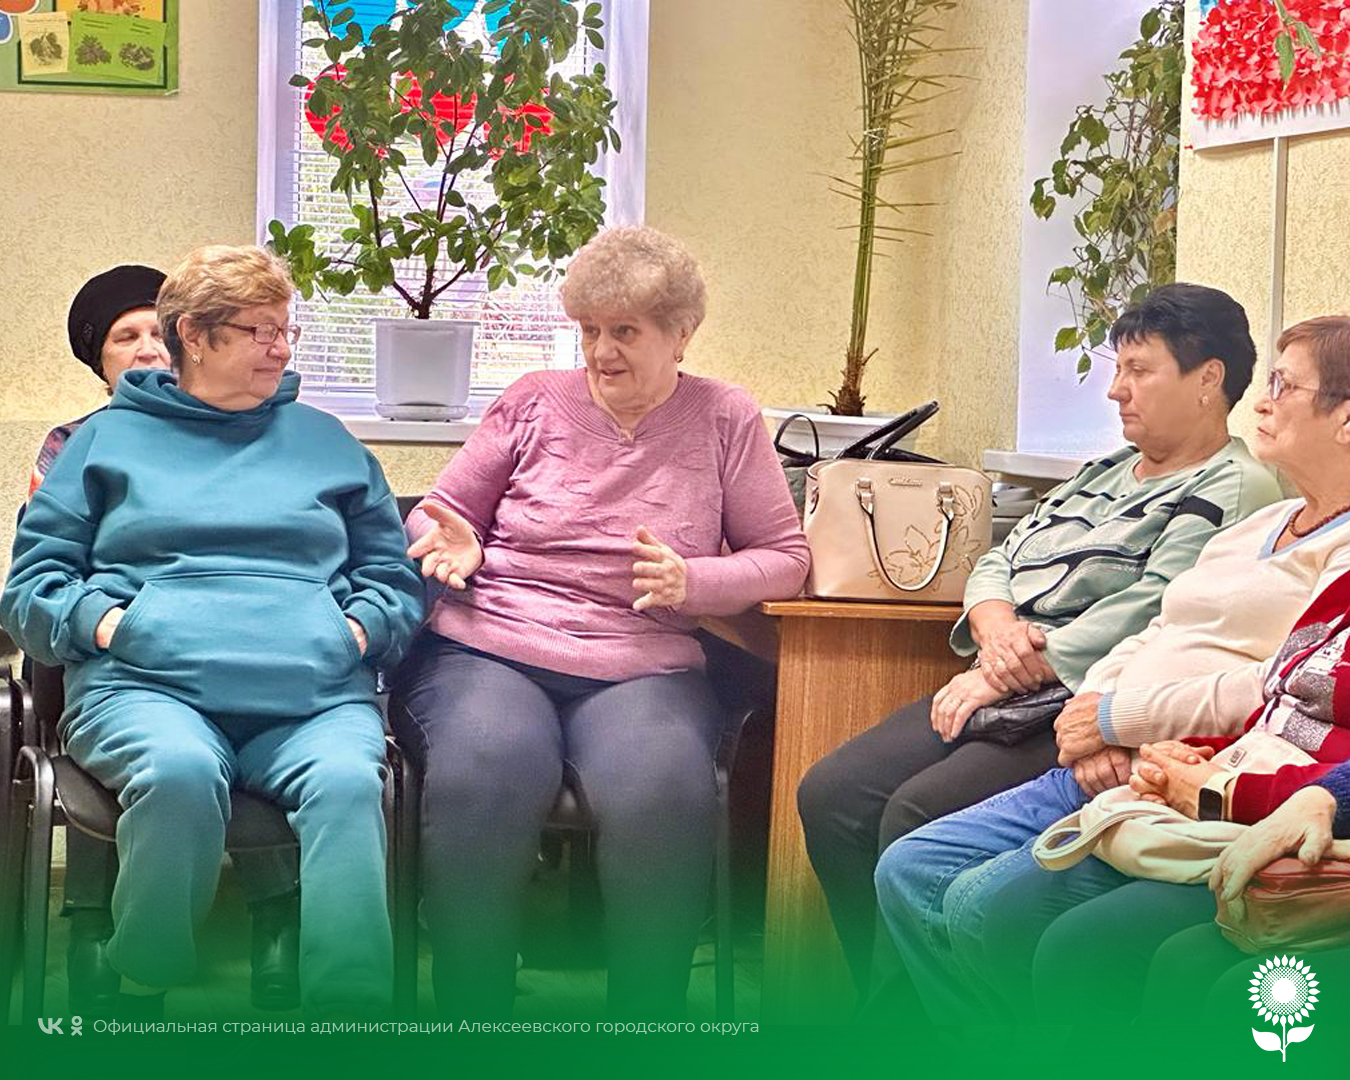 Для получателей социальных услуг отделения дневного пребывания, граждан пожилого возраста и инвалидов состоялась профилактическая беседа.